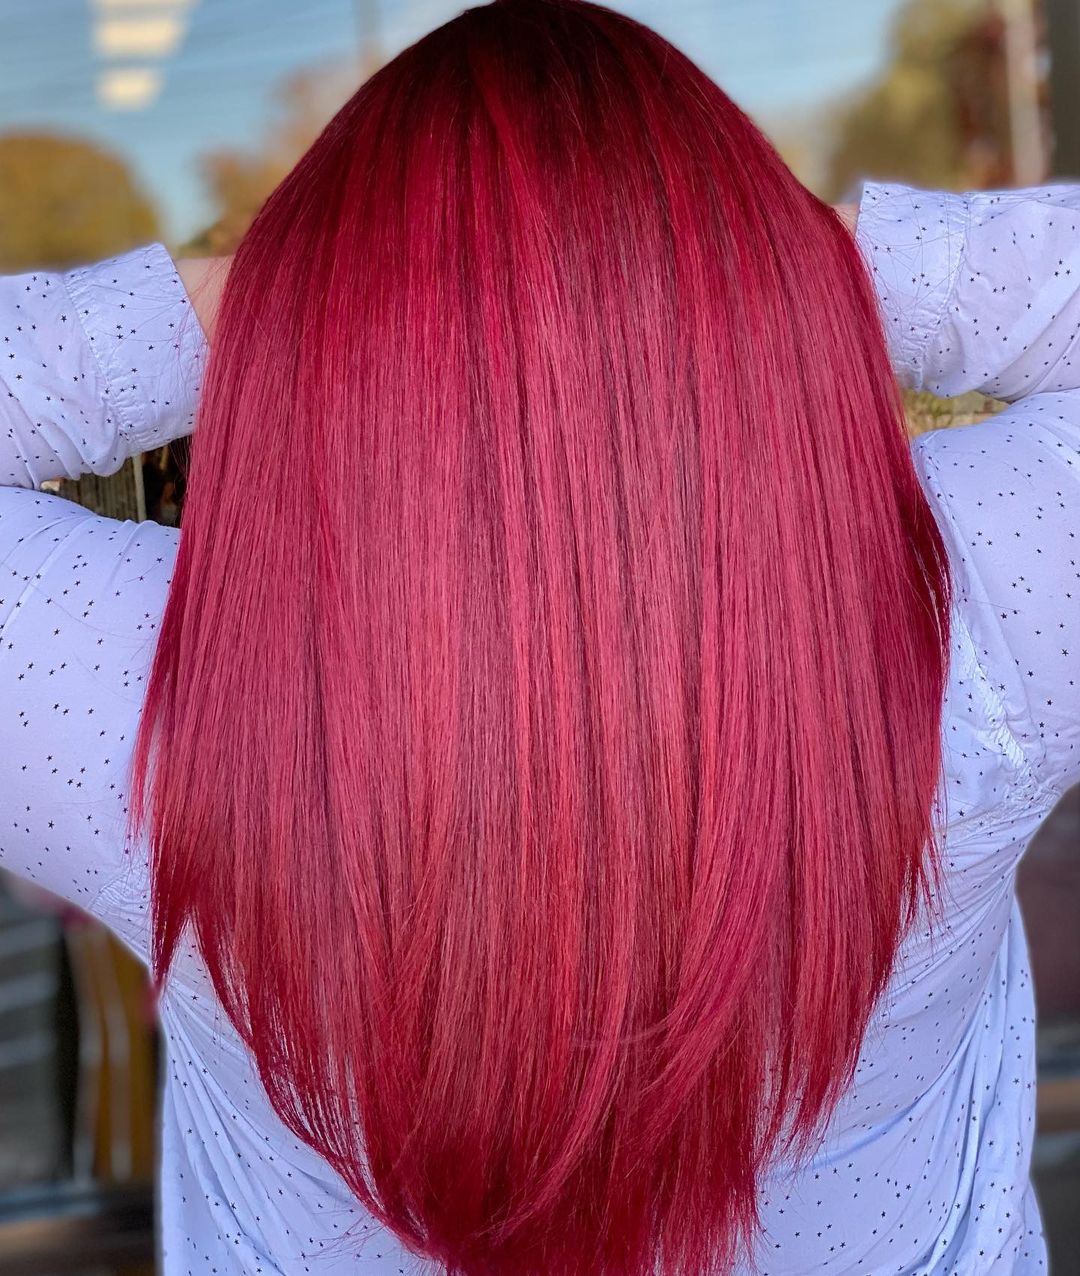 capelli rosso rubino